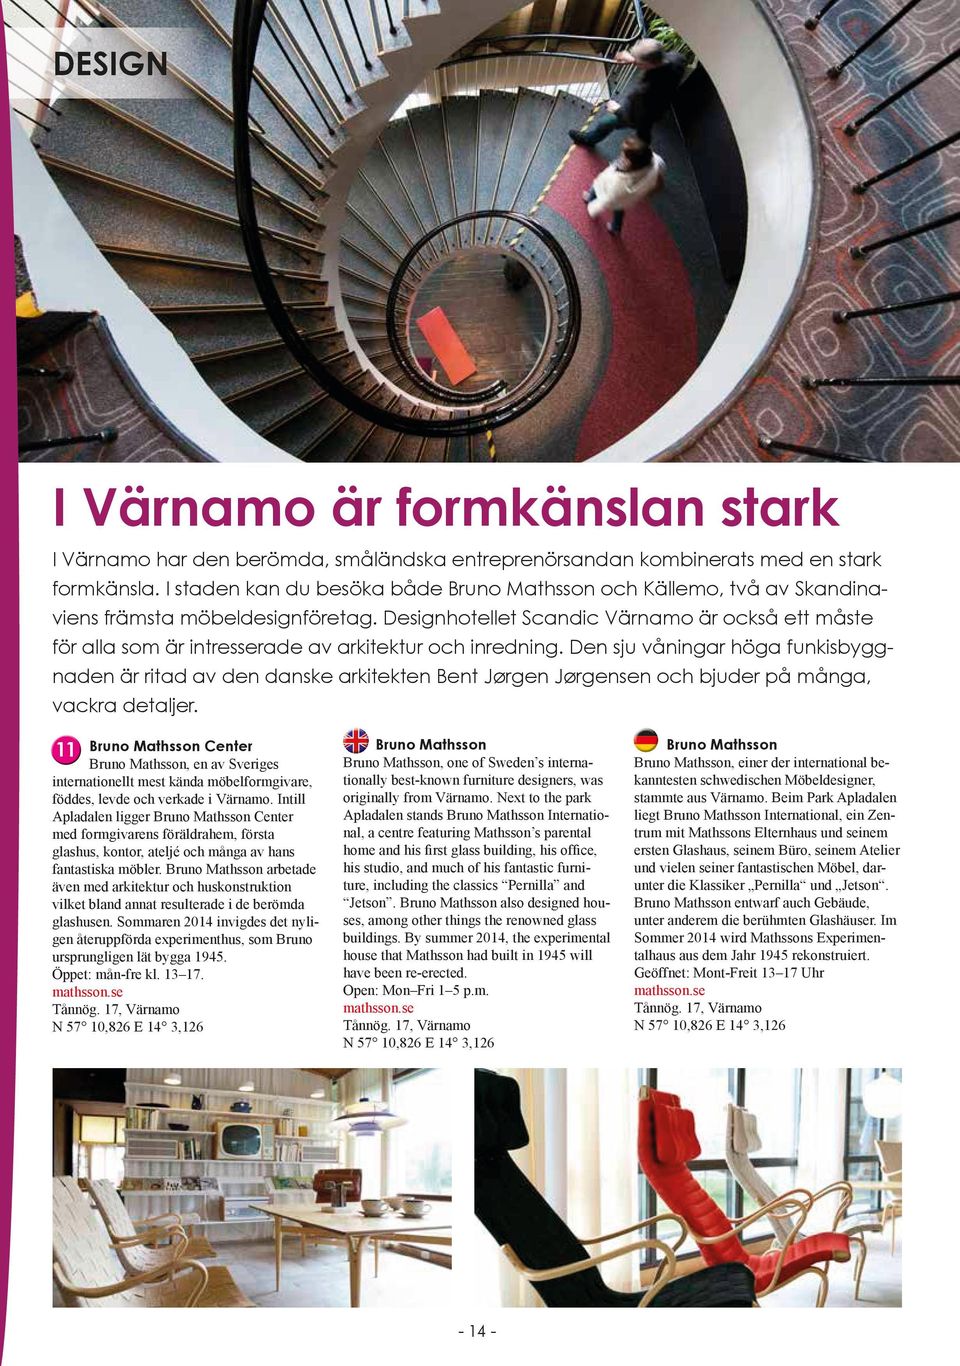 Designhotellet Scandic Värnamo är också ett måste för alla som är intresserade av arkitektur och inredning.